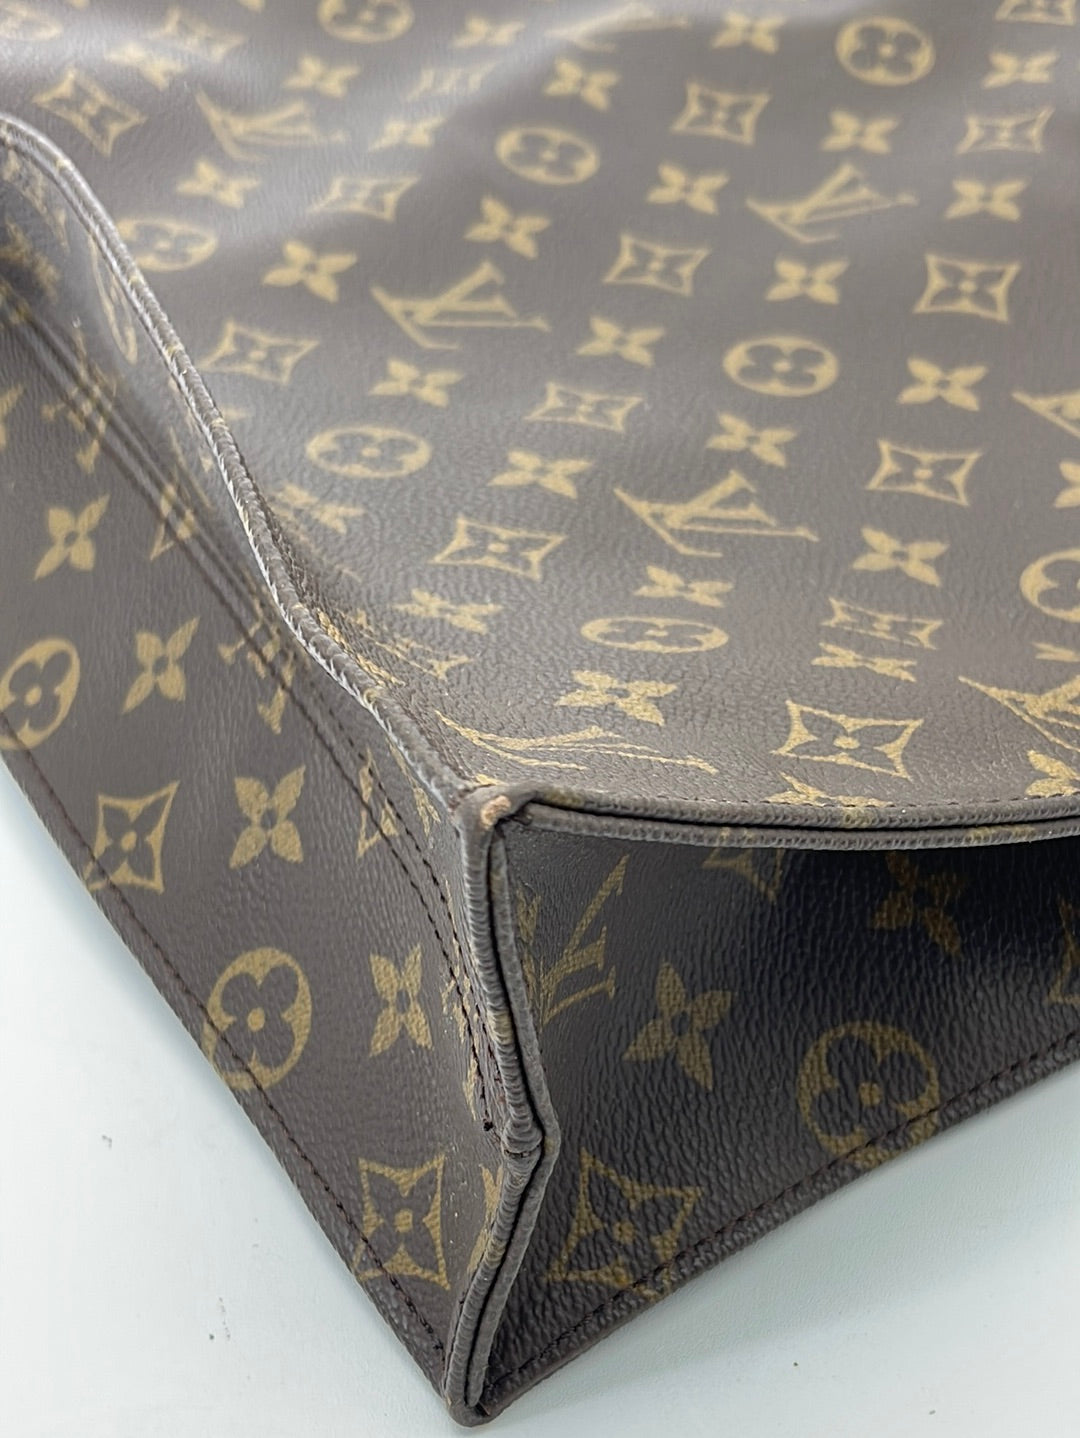 Preloved Louis Vuitton Monogram Leather Sac Plat GM Tote MI8911 062723